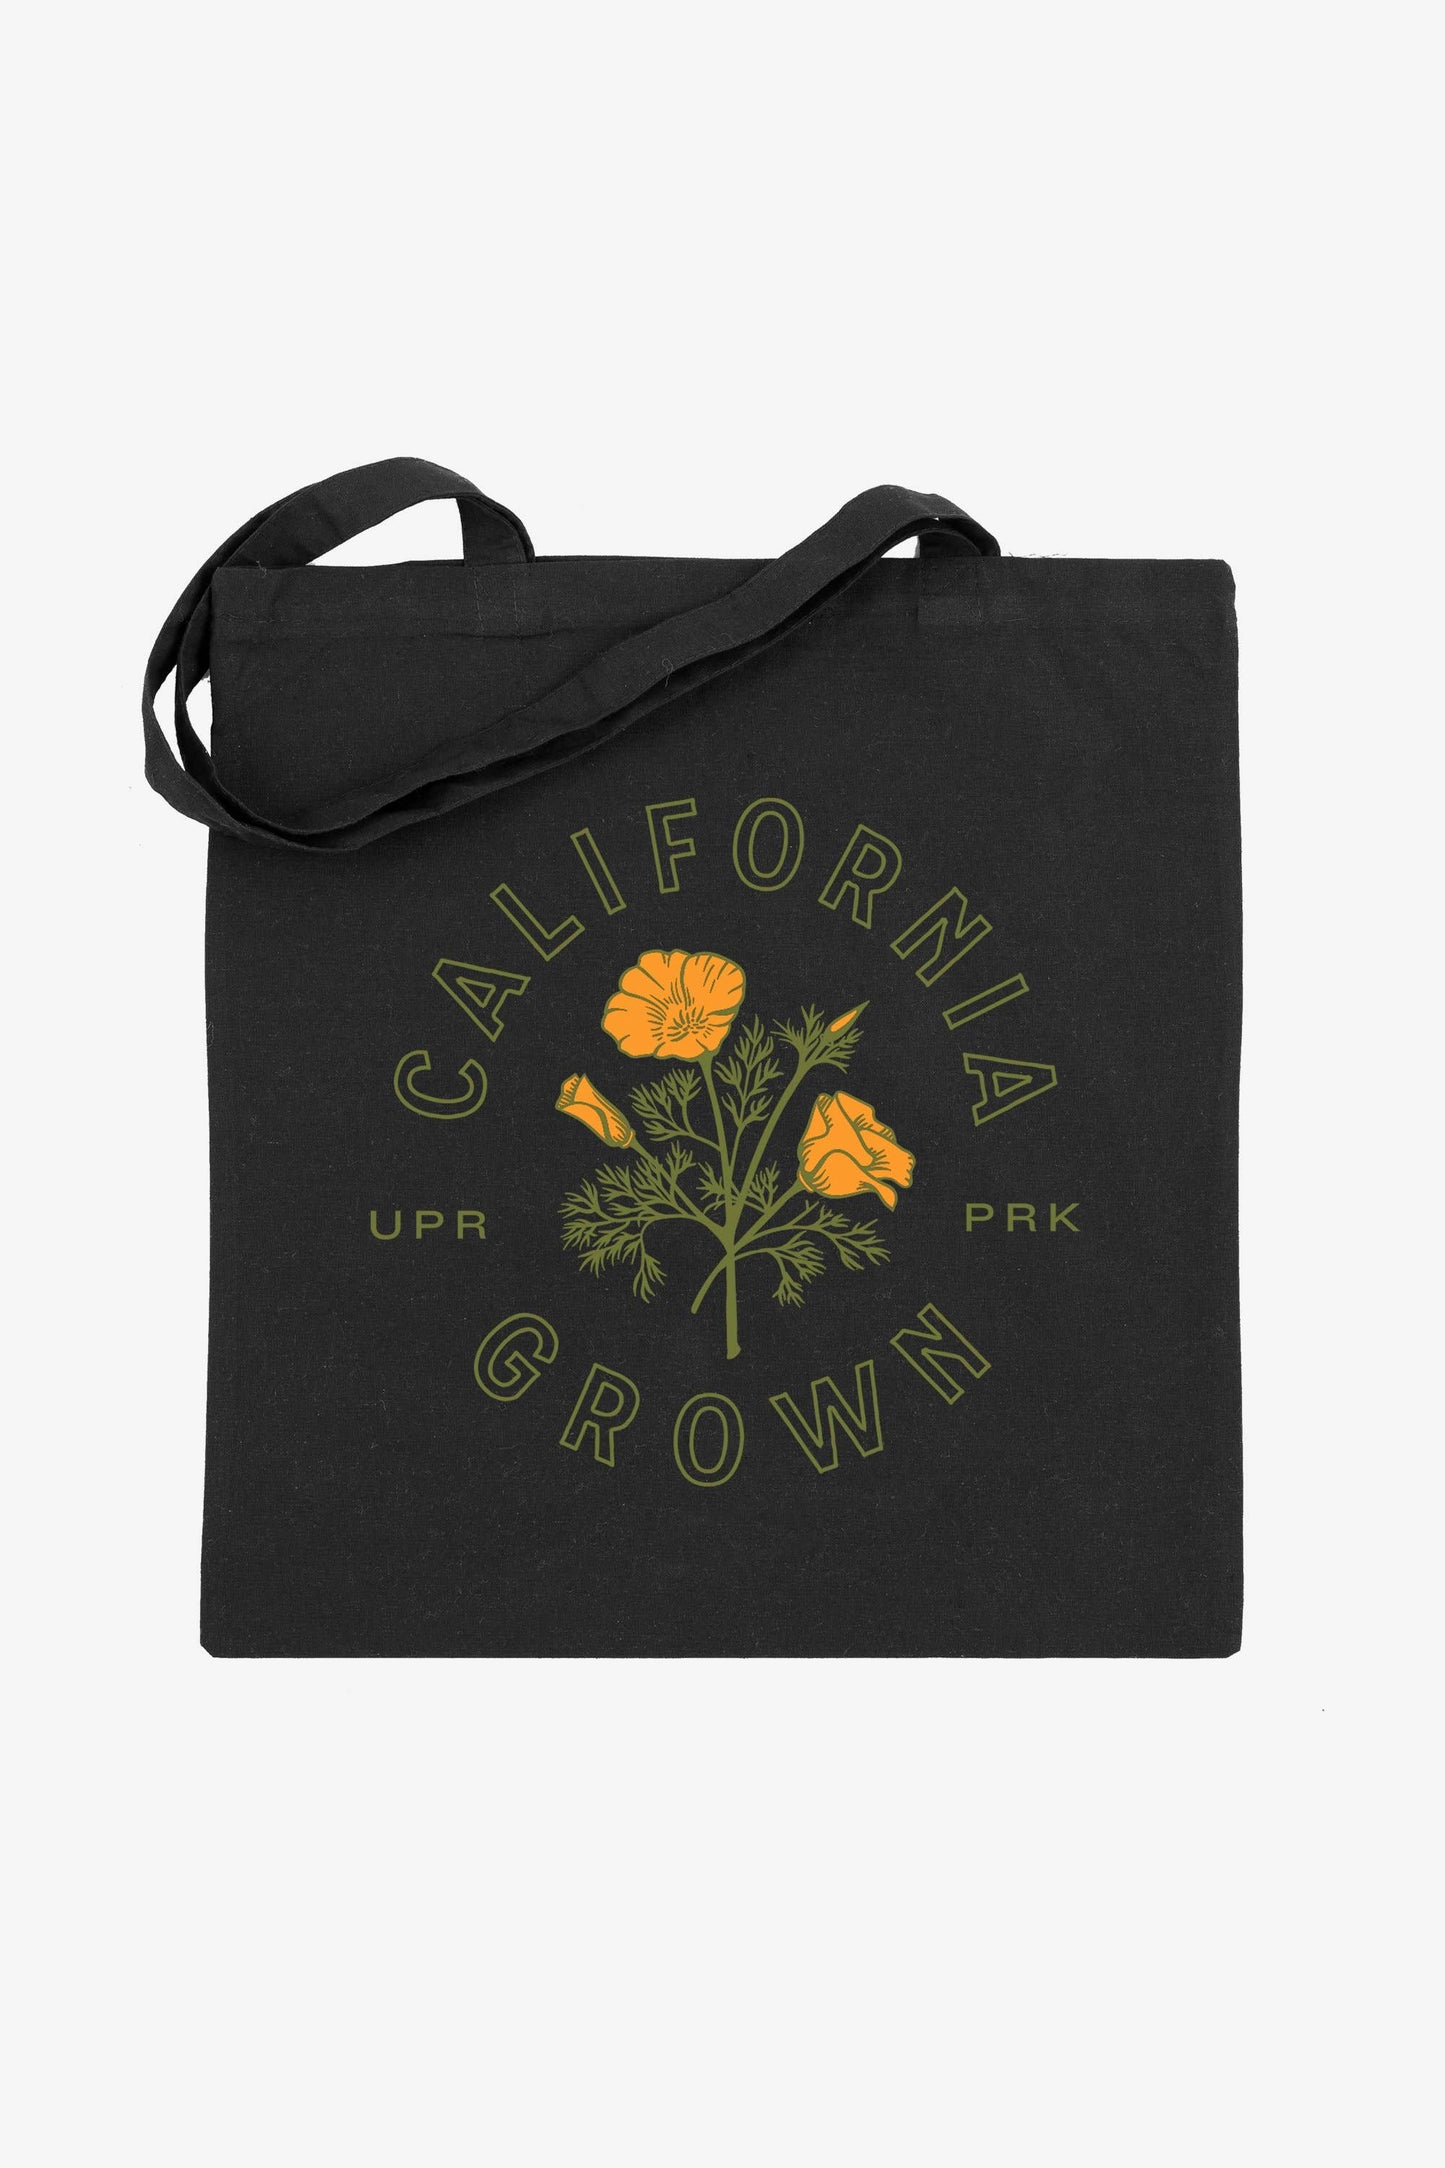 California Grown Tote Bag - Black: Budget